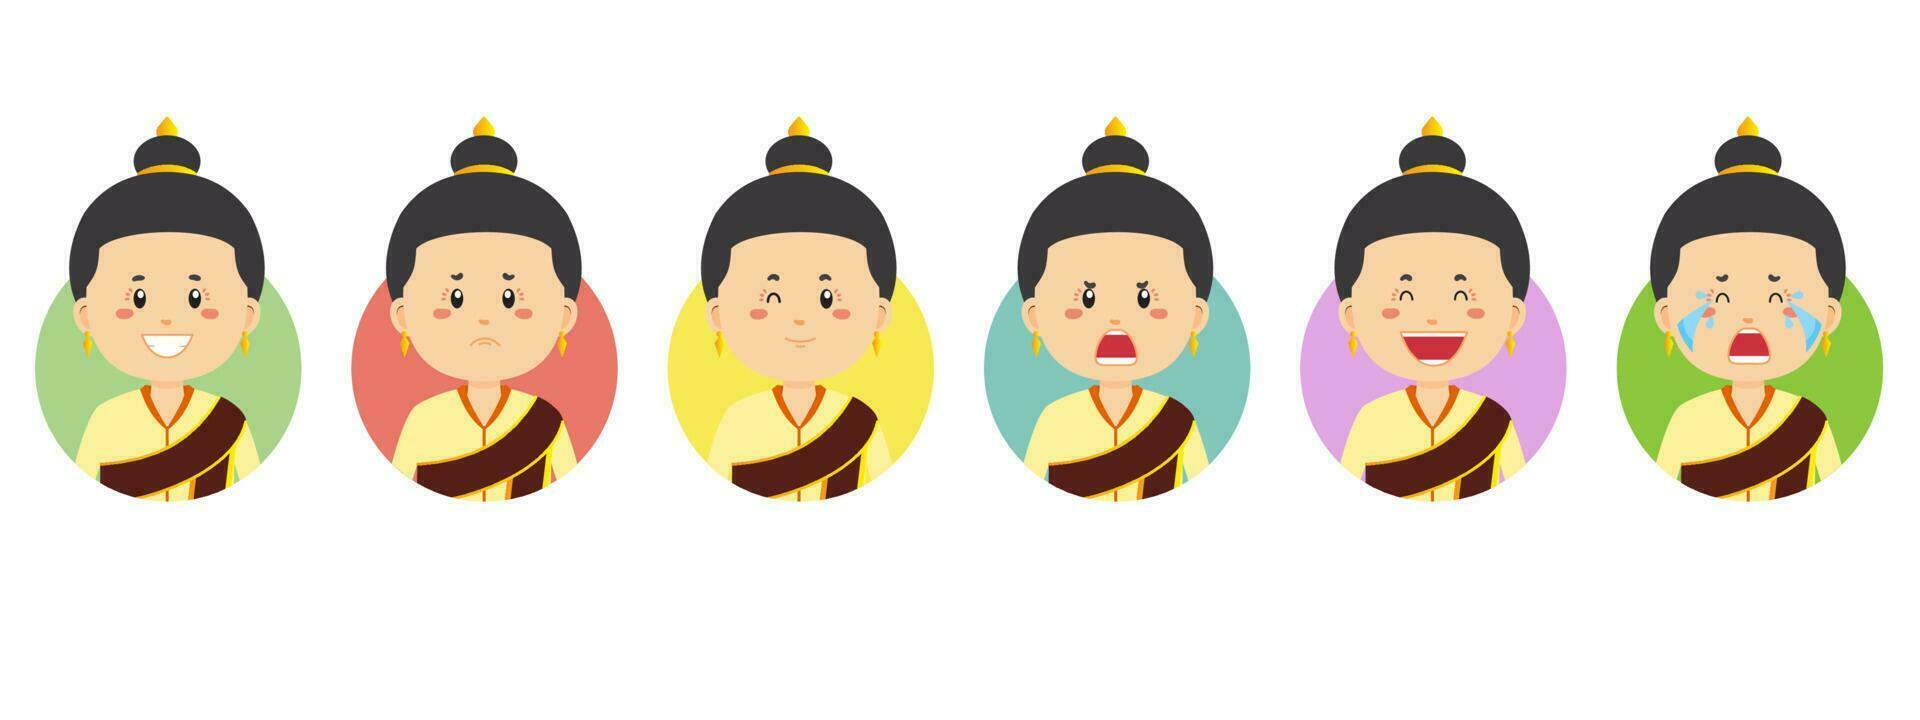 laos avatar med olika uttryck vektor